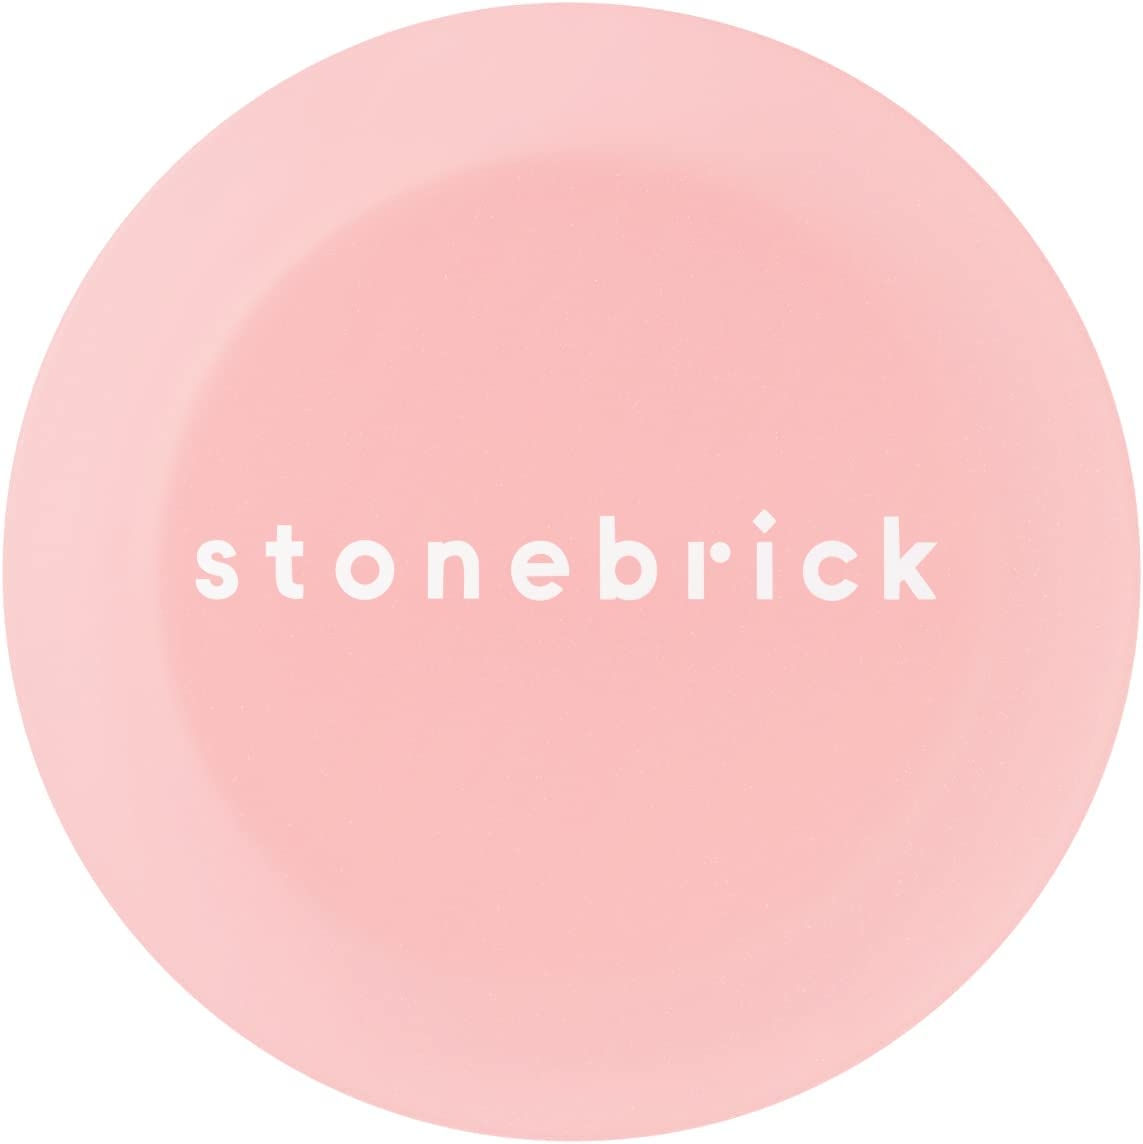 stonebrick(ストーンブリック) ブラッシャーパステル